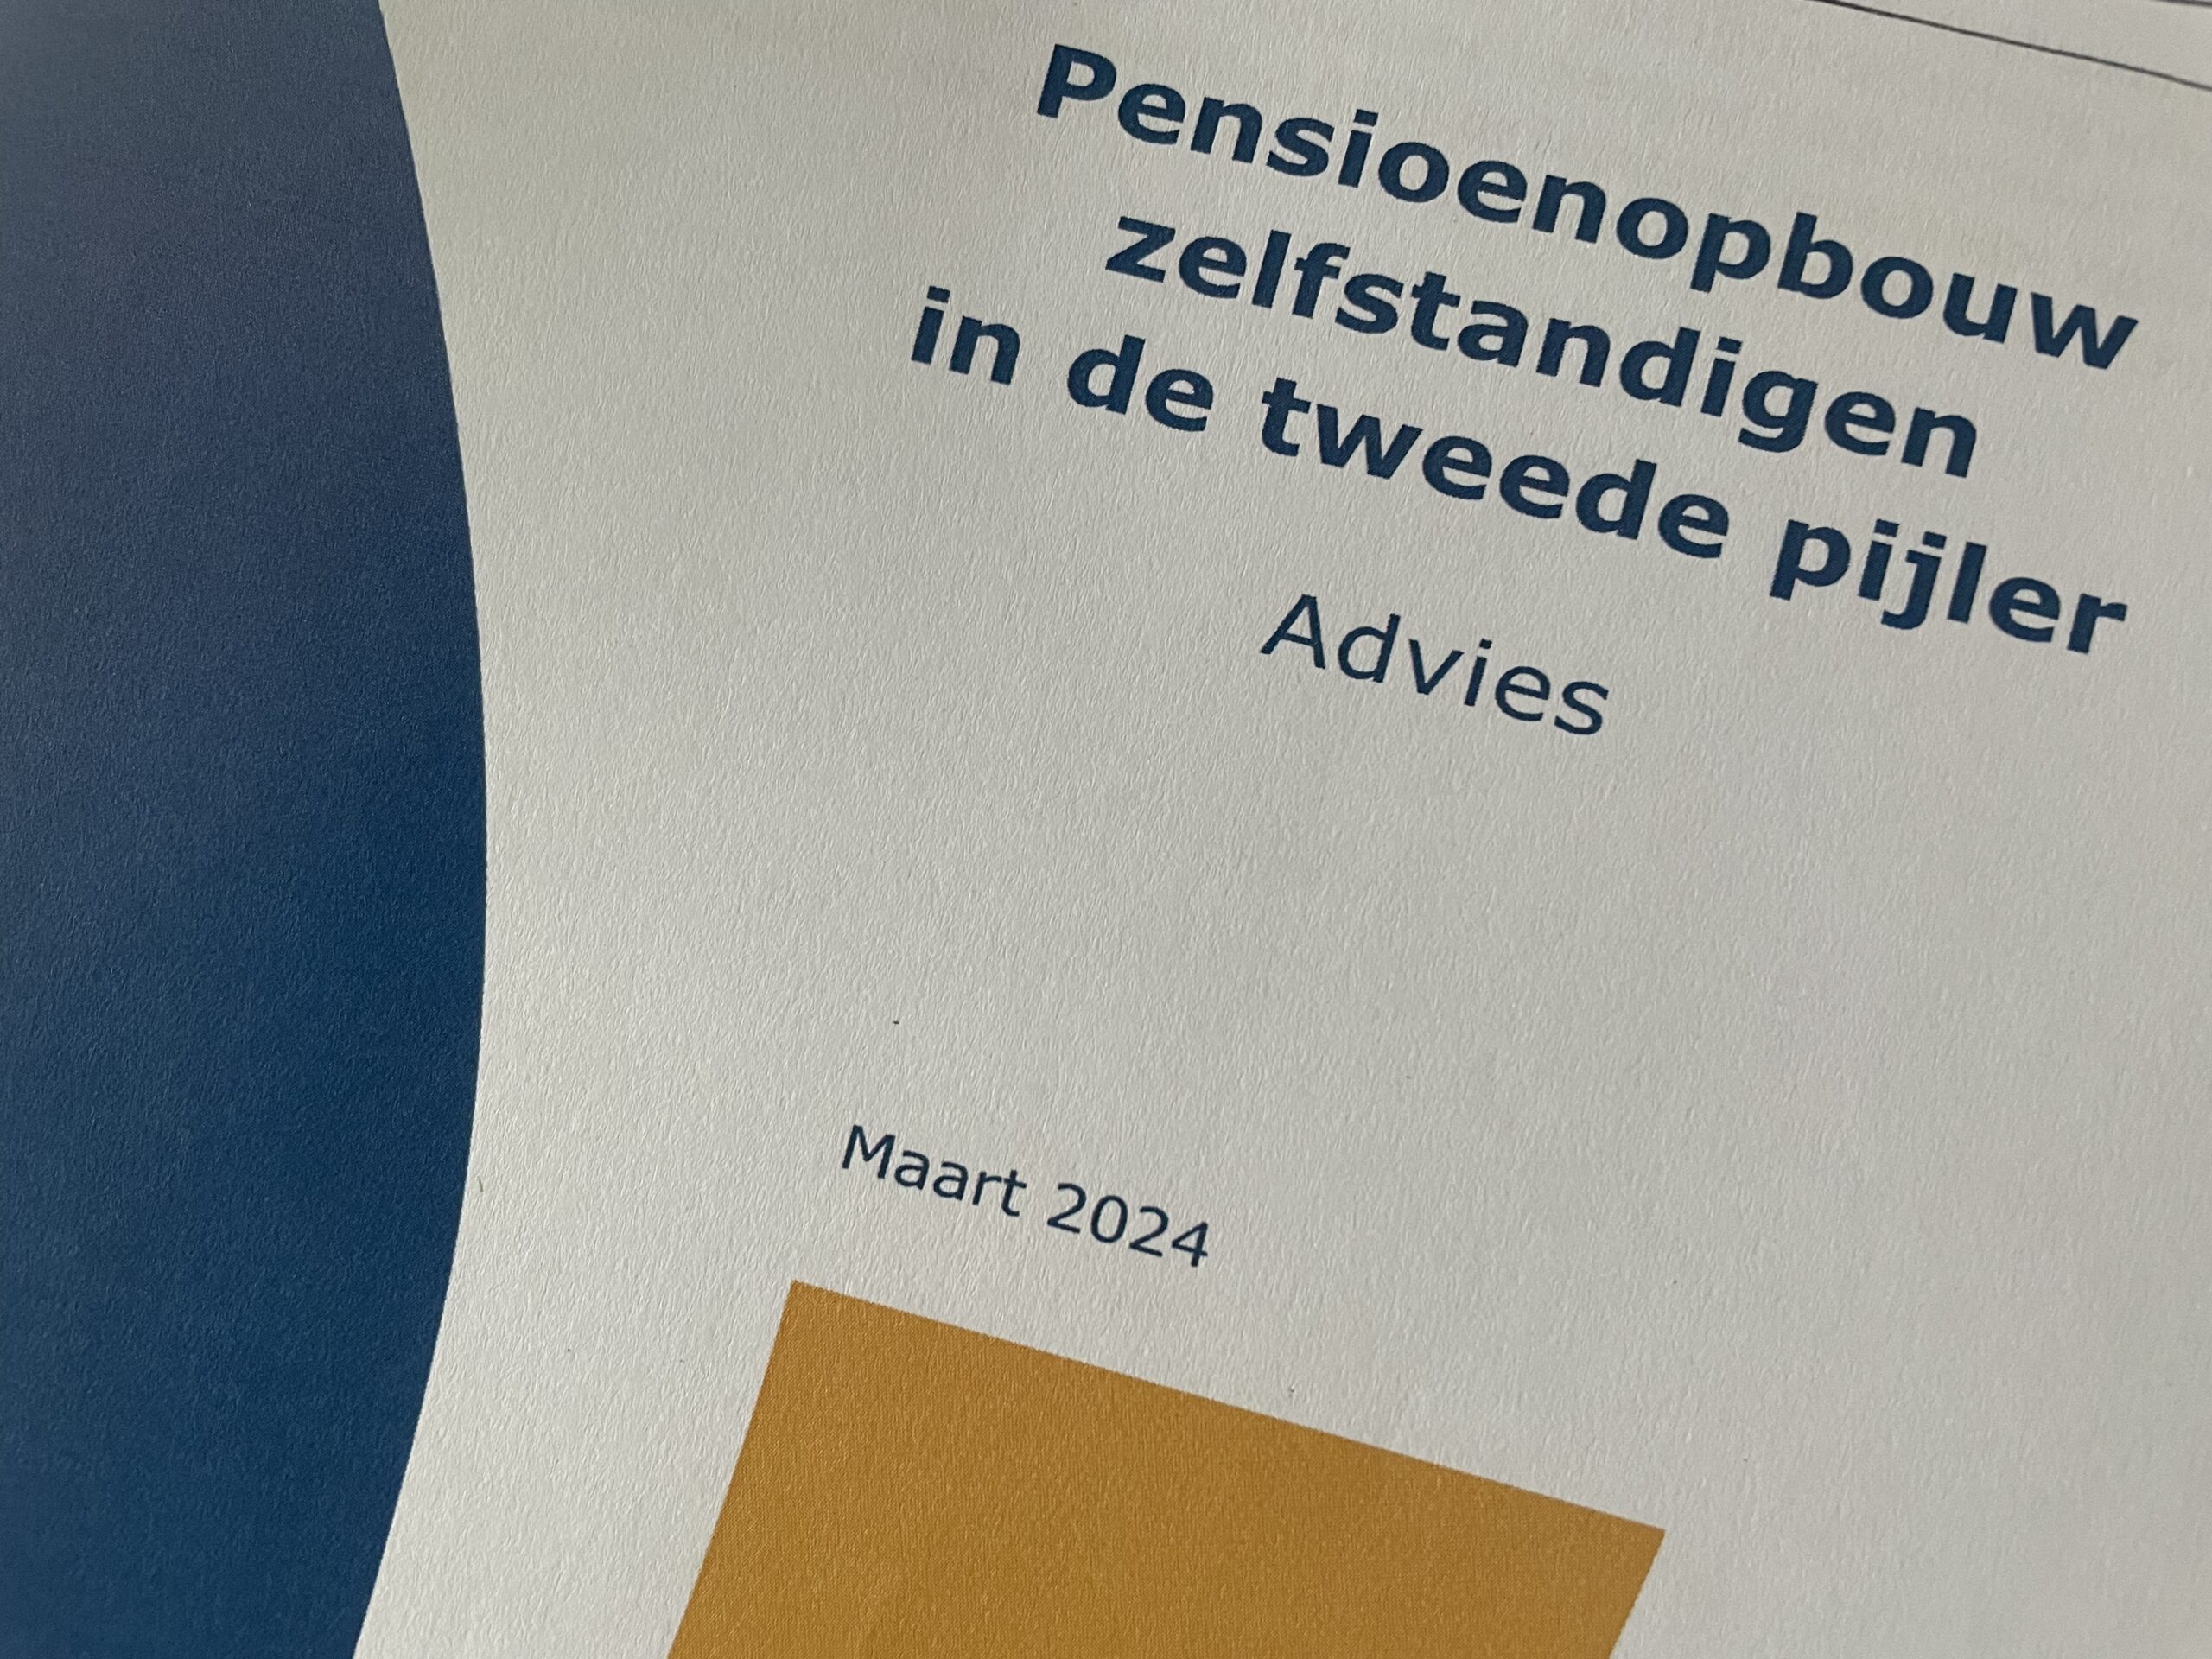 Advies Stichting van de Arbeid pensioenopbouw zelfstandigen in de tweede pijler